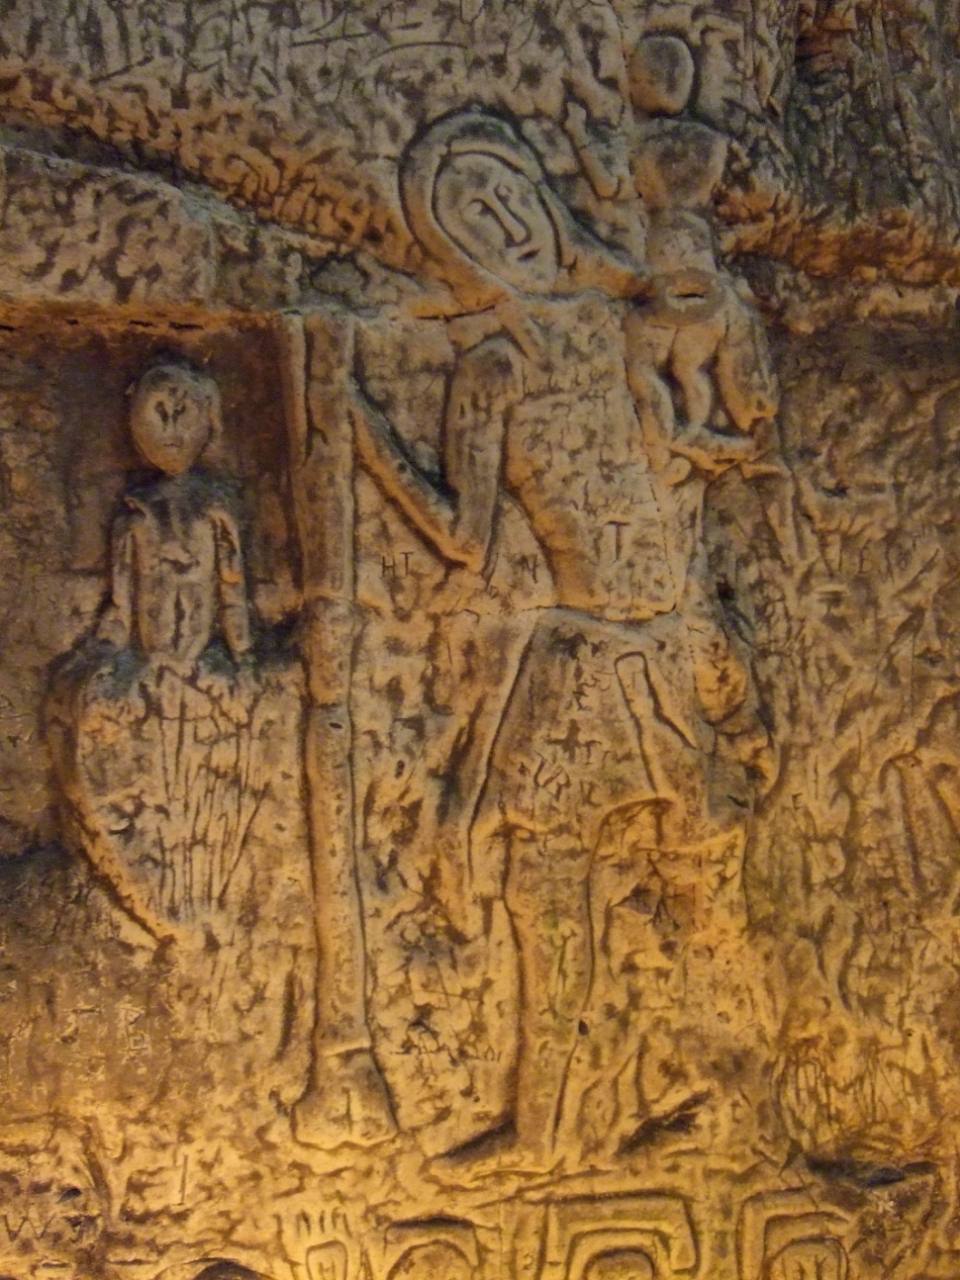 人造罗伊斯顿洞穴 4 中的神秘符号和雕刻